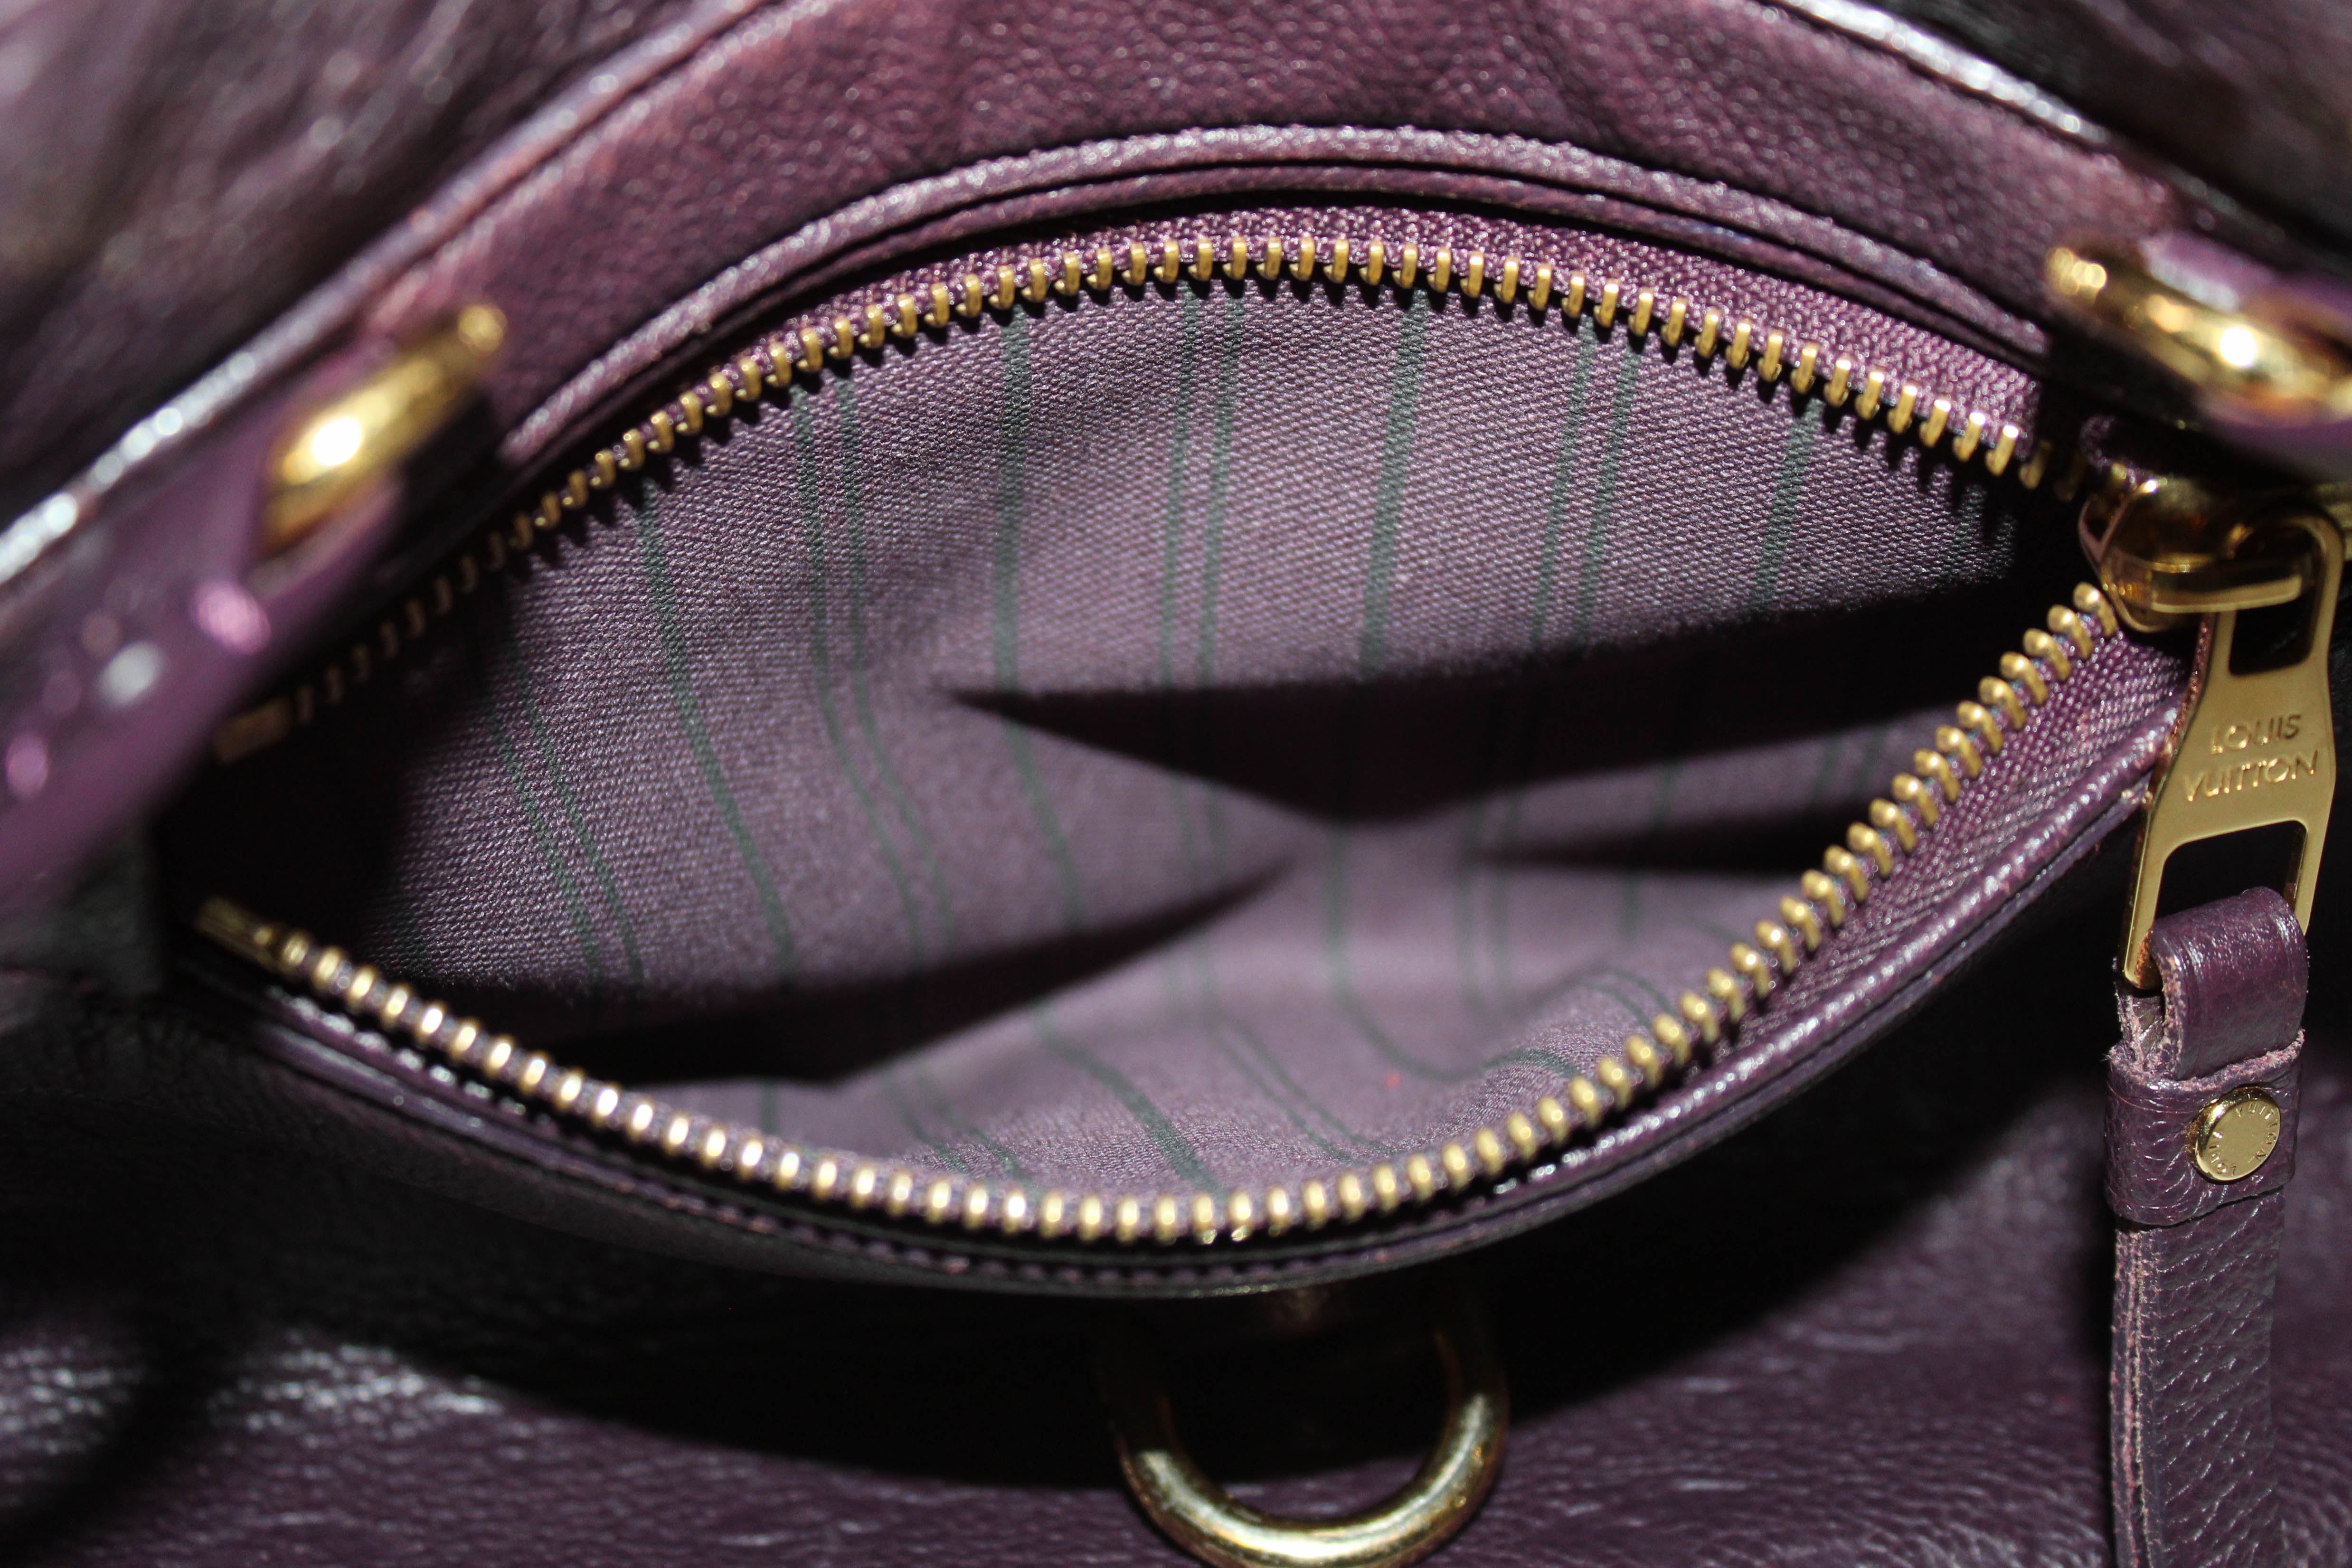 Authentic Louis Vuitton Purple Empreinte Leather Inspiree Shoulder Bag